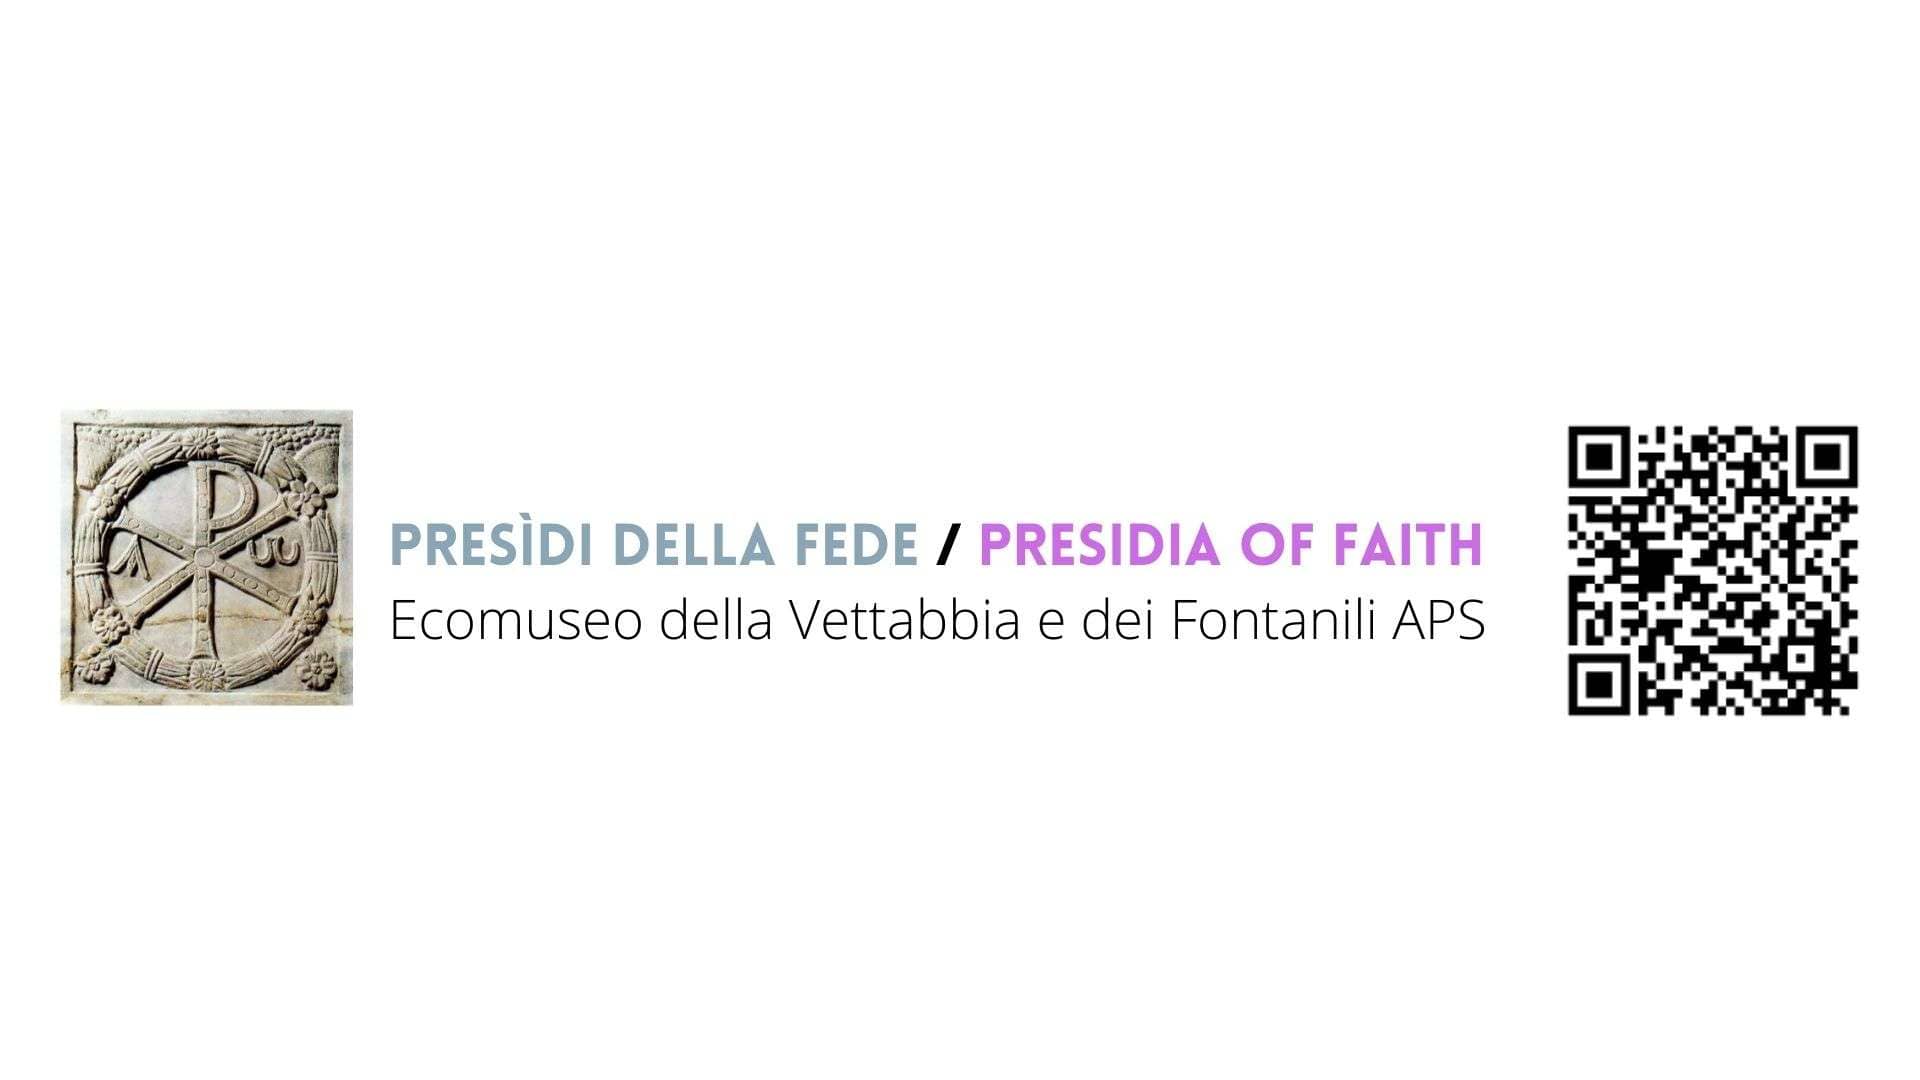 Predidi della fede / Presidia of Faith - Ecomuseo vettabbia Fontanili APS